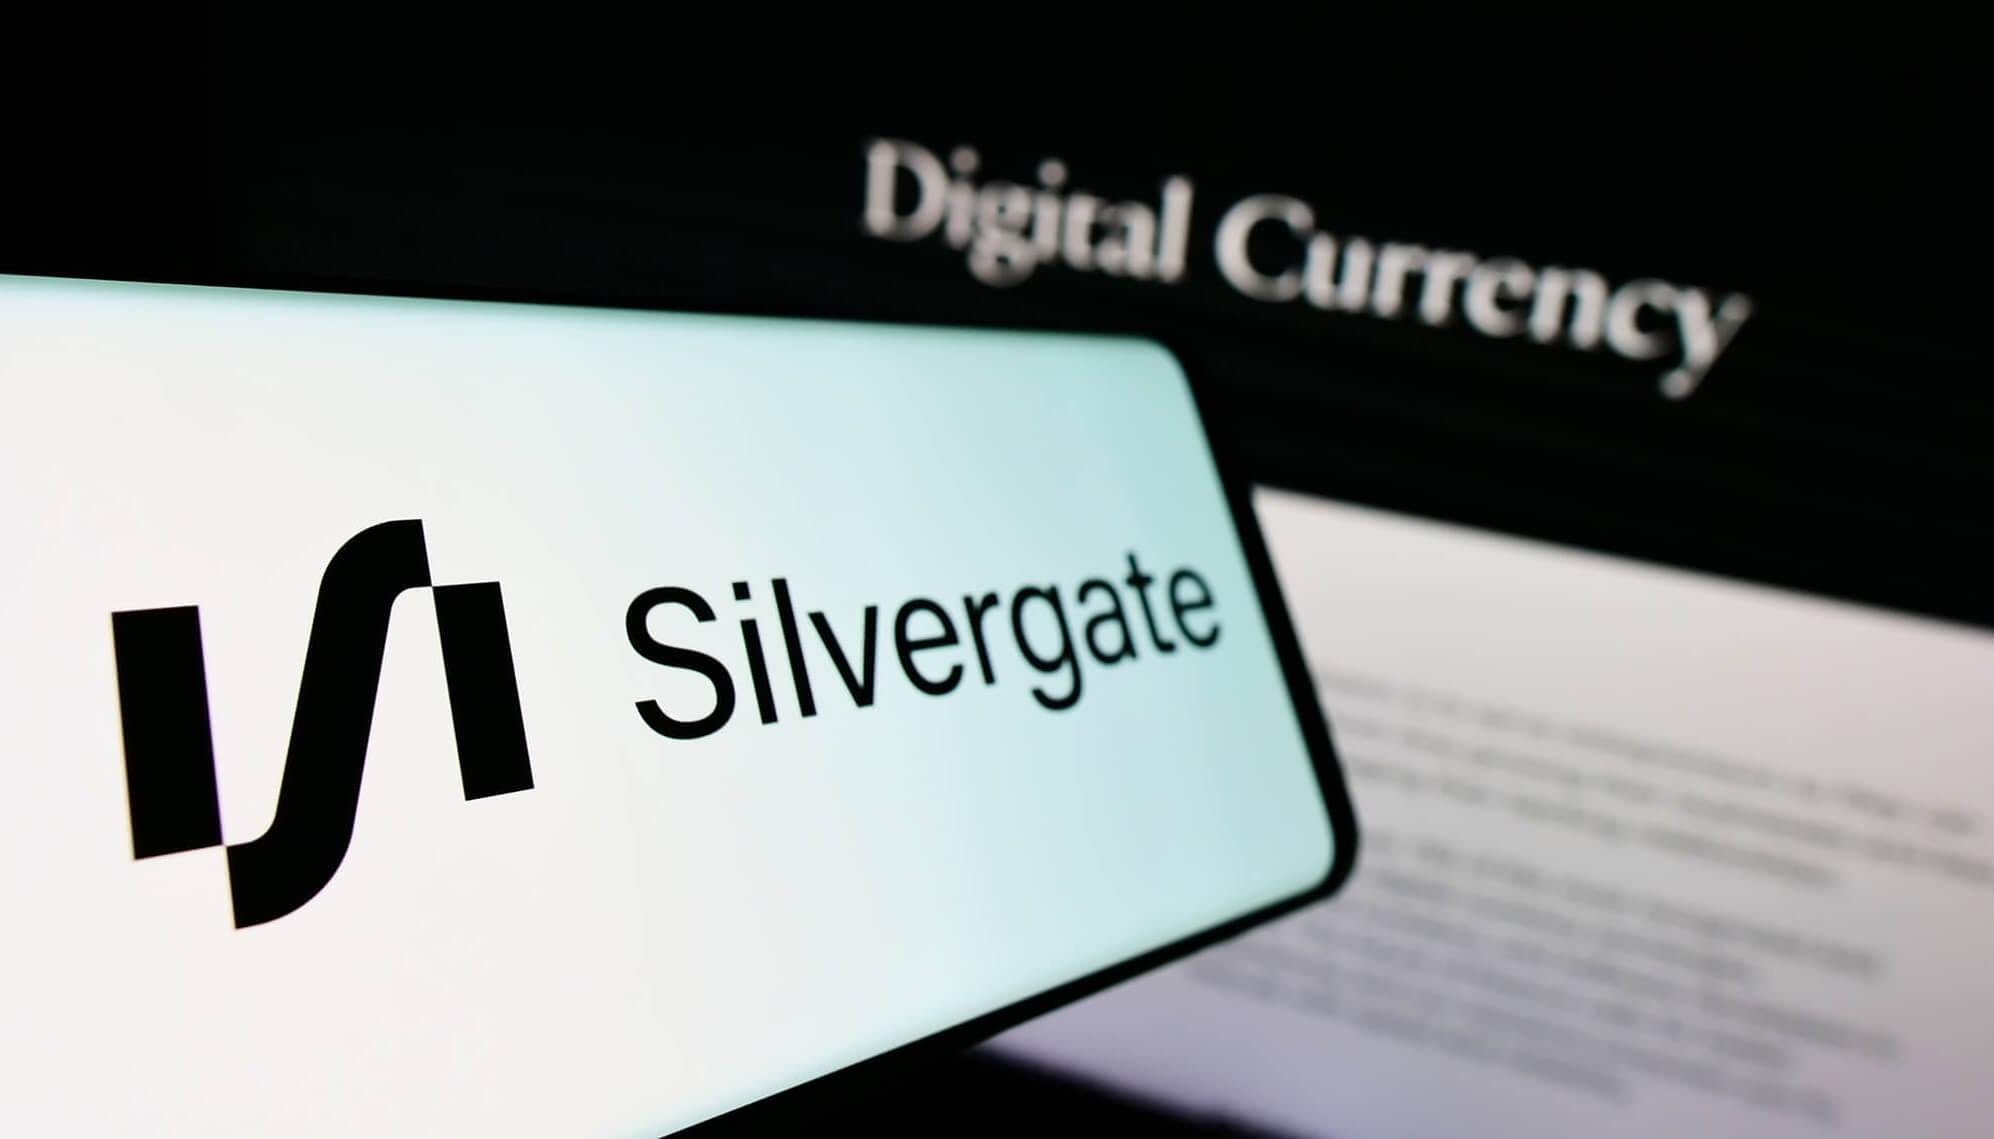 Quay cuồng với khủng hoảng, Silvergate đóng cửa một dịch vụ